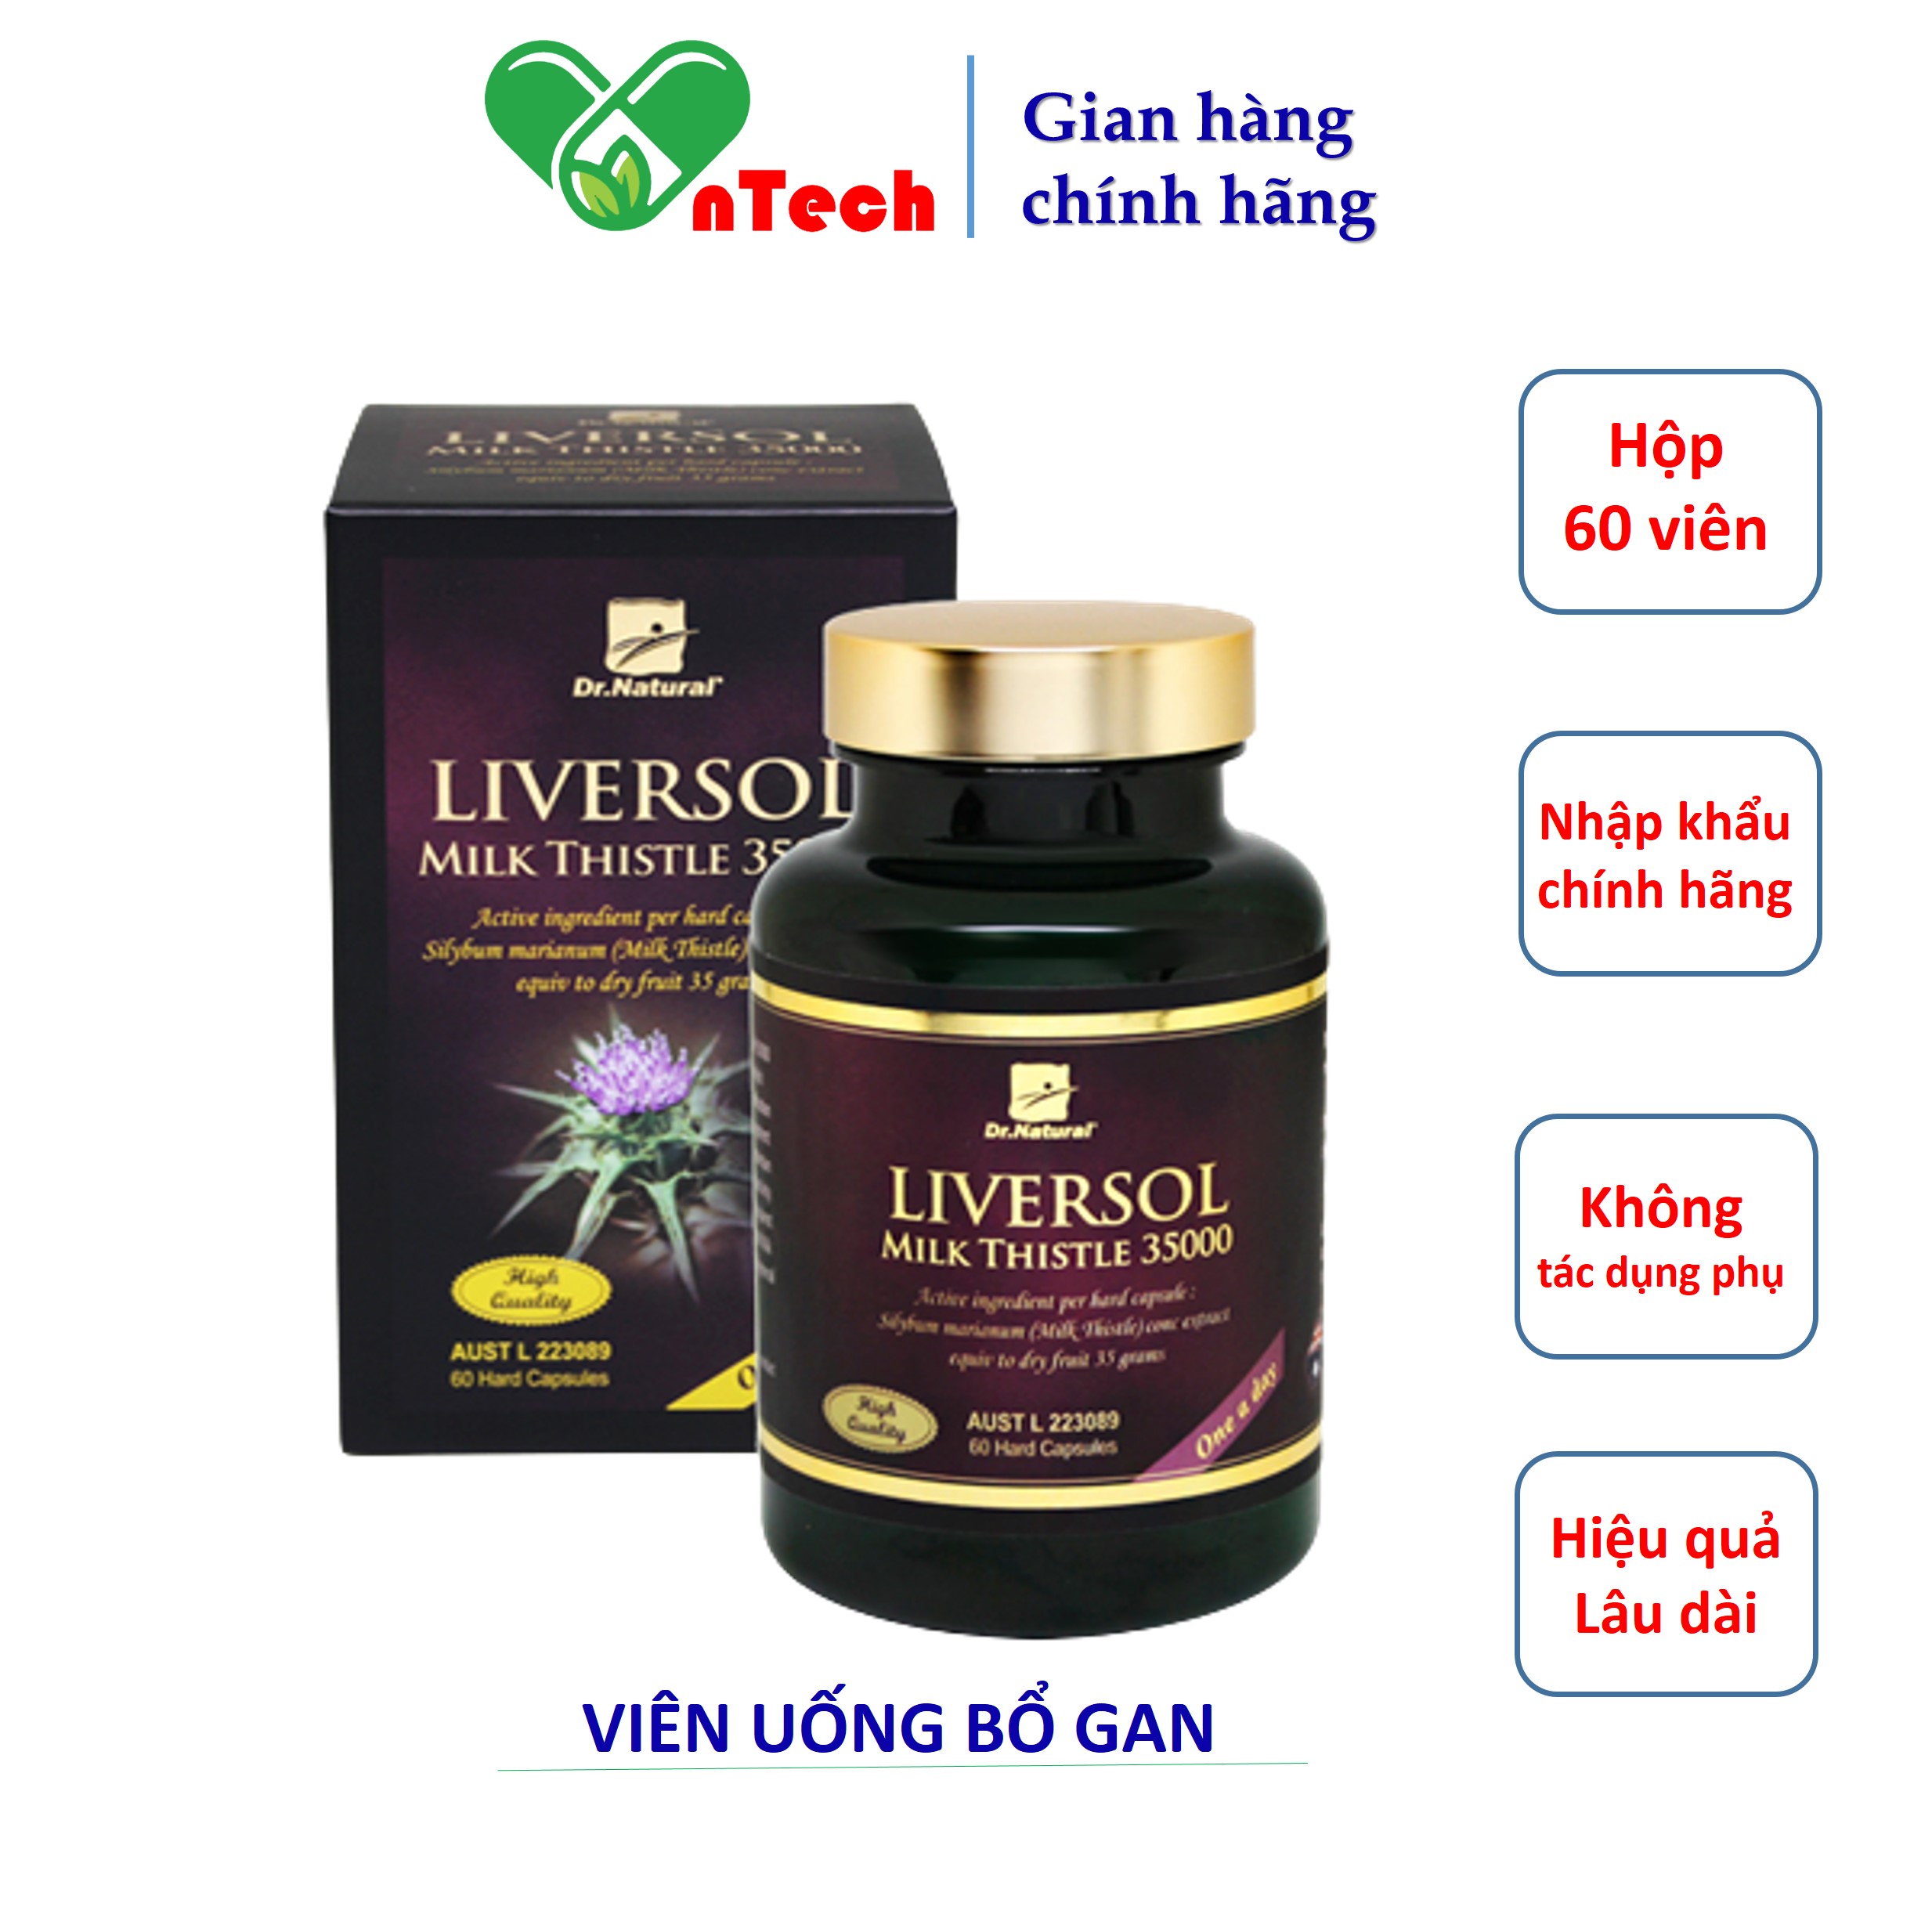 Viên uống bổ gan LiverSol Milk Thistle 35000 hỗ trợ chức năng gan giúp mát